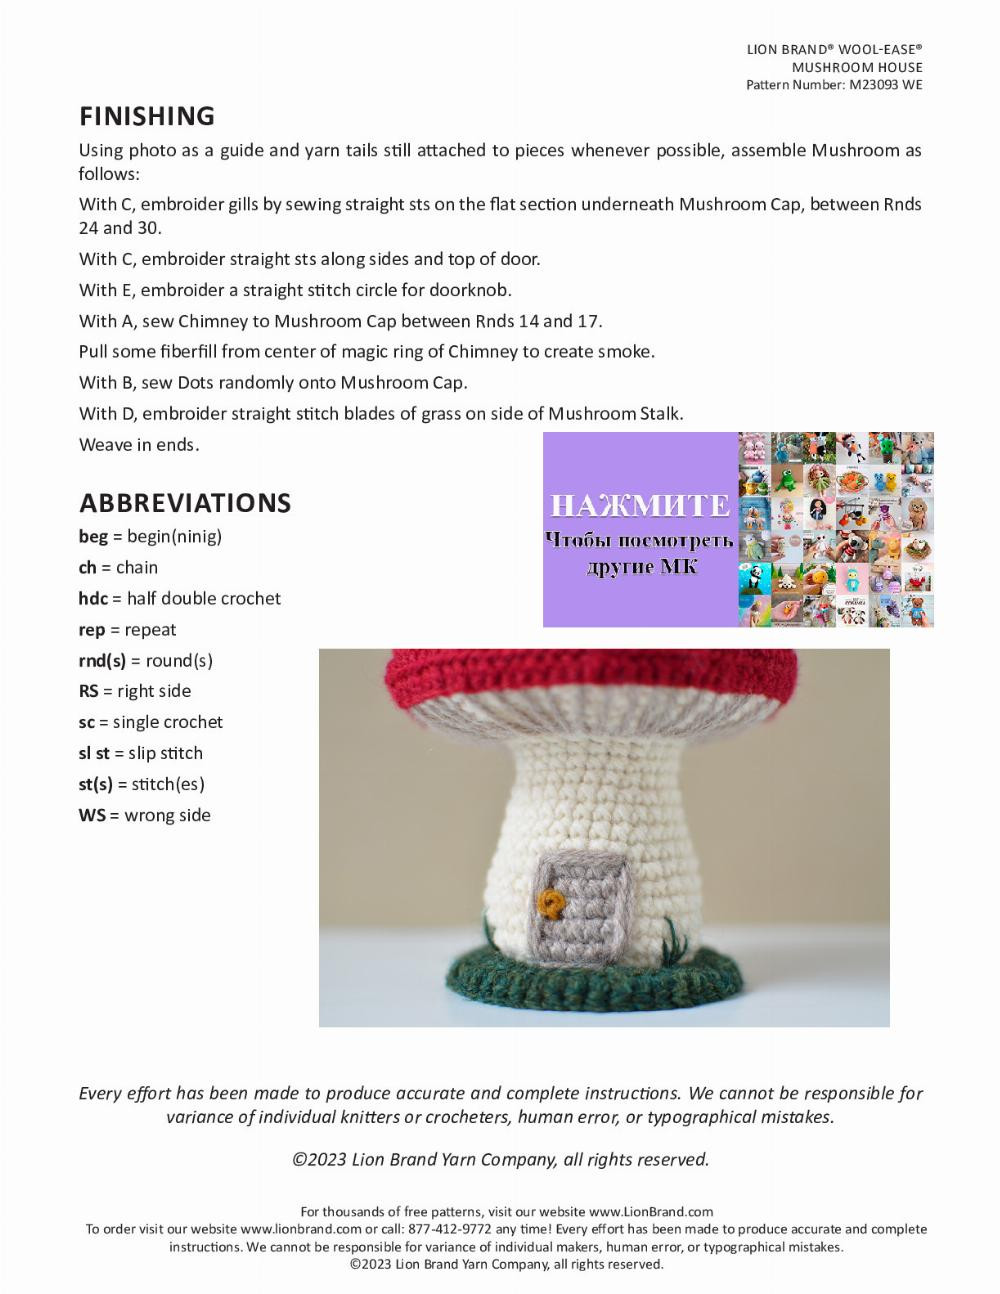 Free Crochet Pattern Mushroom House Pattern